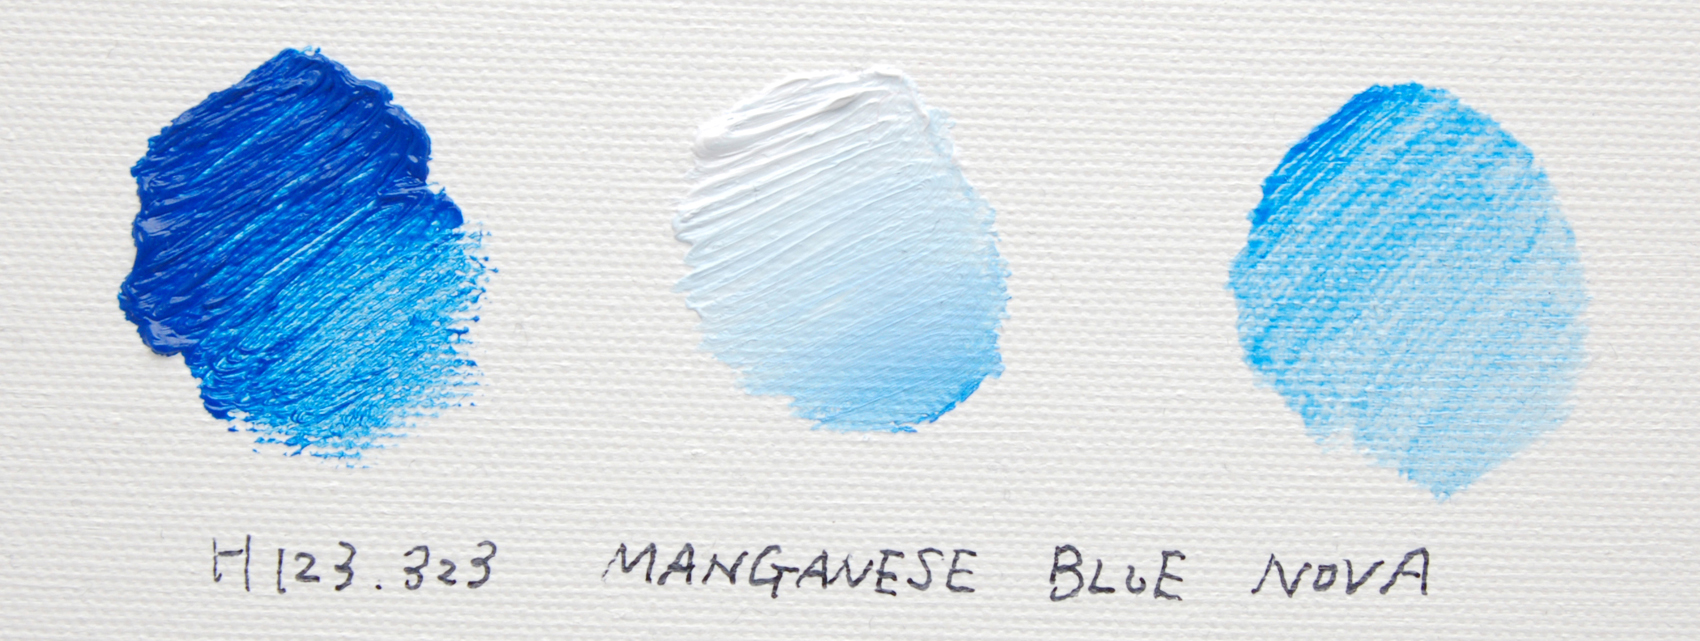 マンガニーズブルーノーバ/MANGANESE BLUE NOVA